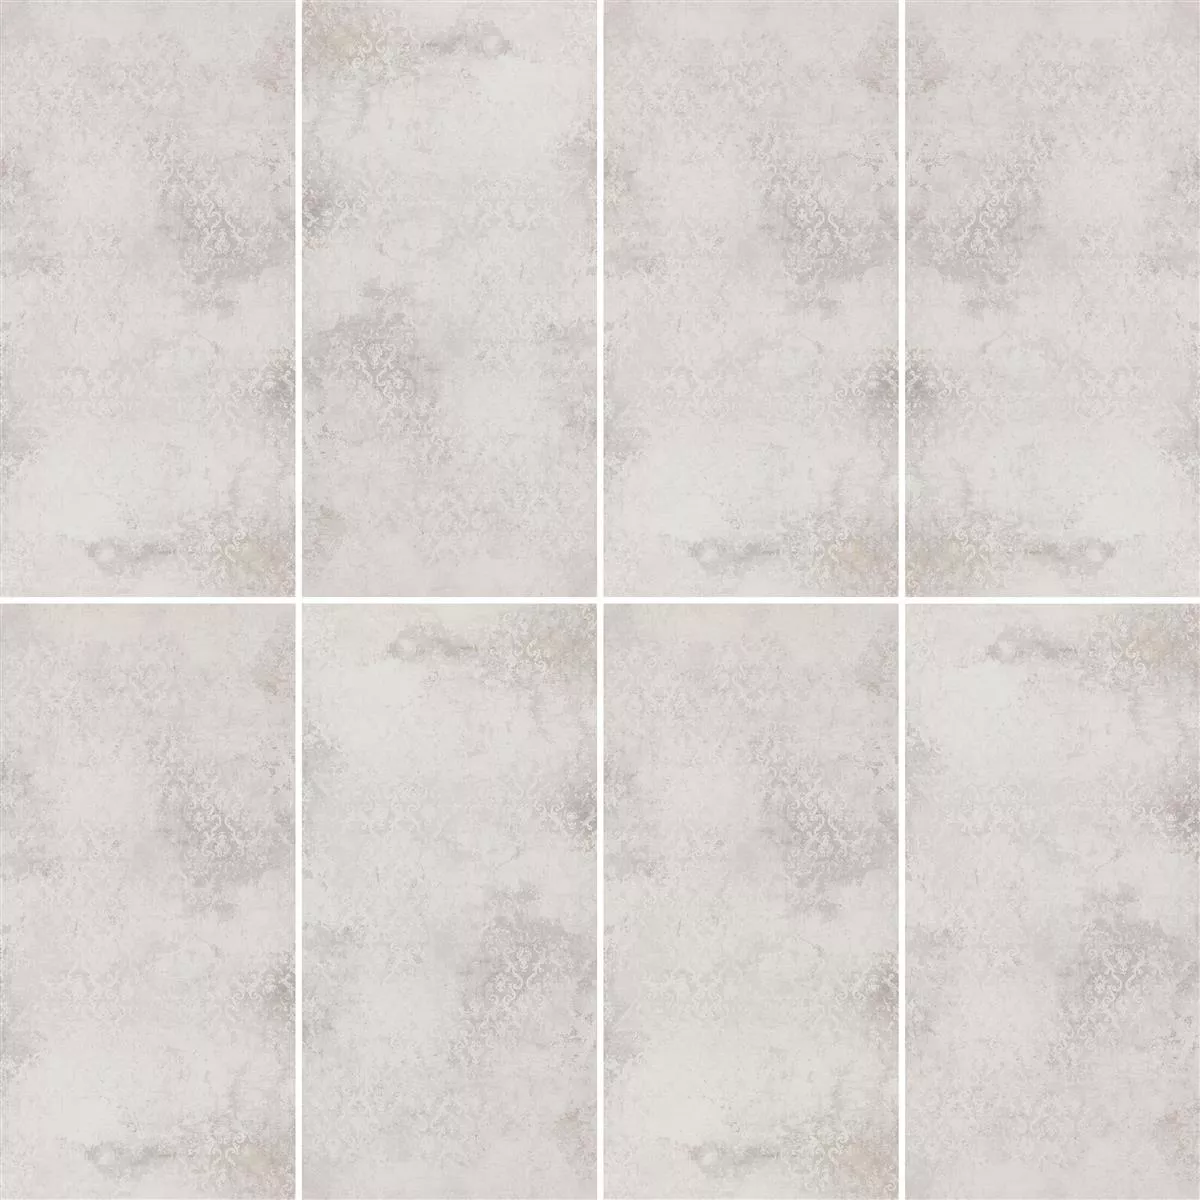 Carrelage Sol Et Mur Poetic Pierre Optique R10/A Blanc Decor 60x120cm